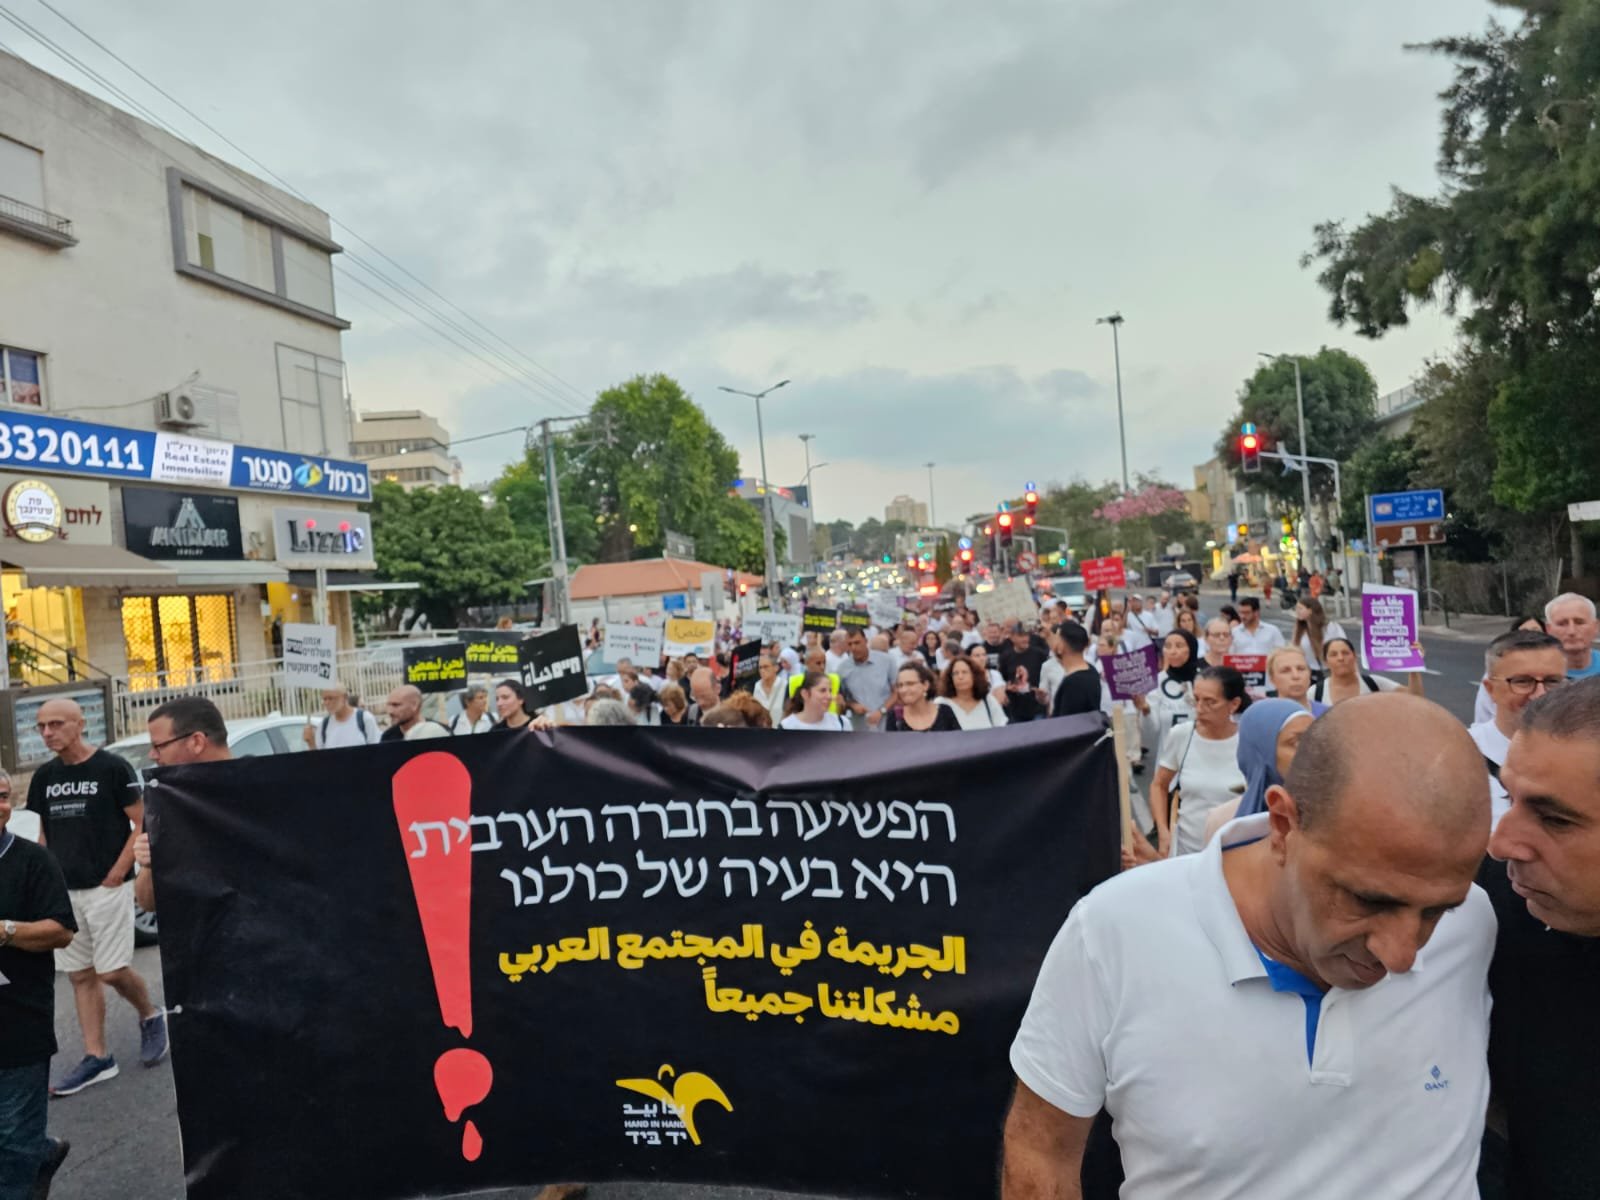 حيفا: اختتام "مسيرة الأموات"- حضور مهيب رافض للعنف والجريمة!-7